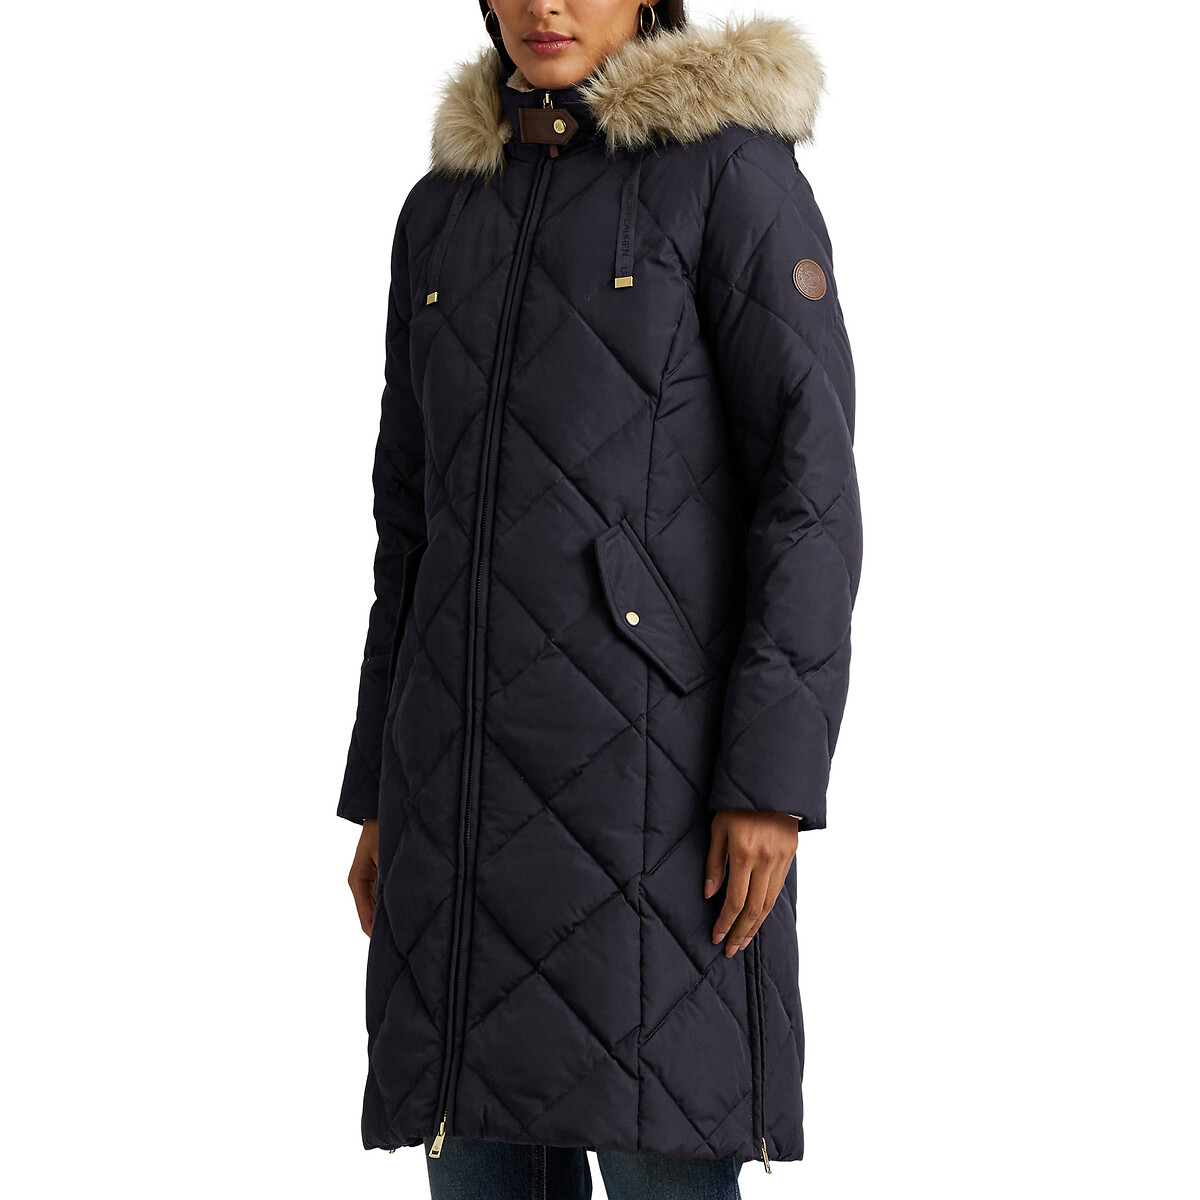 Куртка стеганая средней длины с капюшоном с оторочкой мехом XS синий куртка стеганая средней длины на молнии с капюшоном l черный